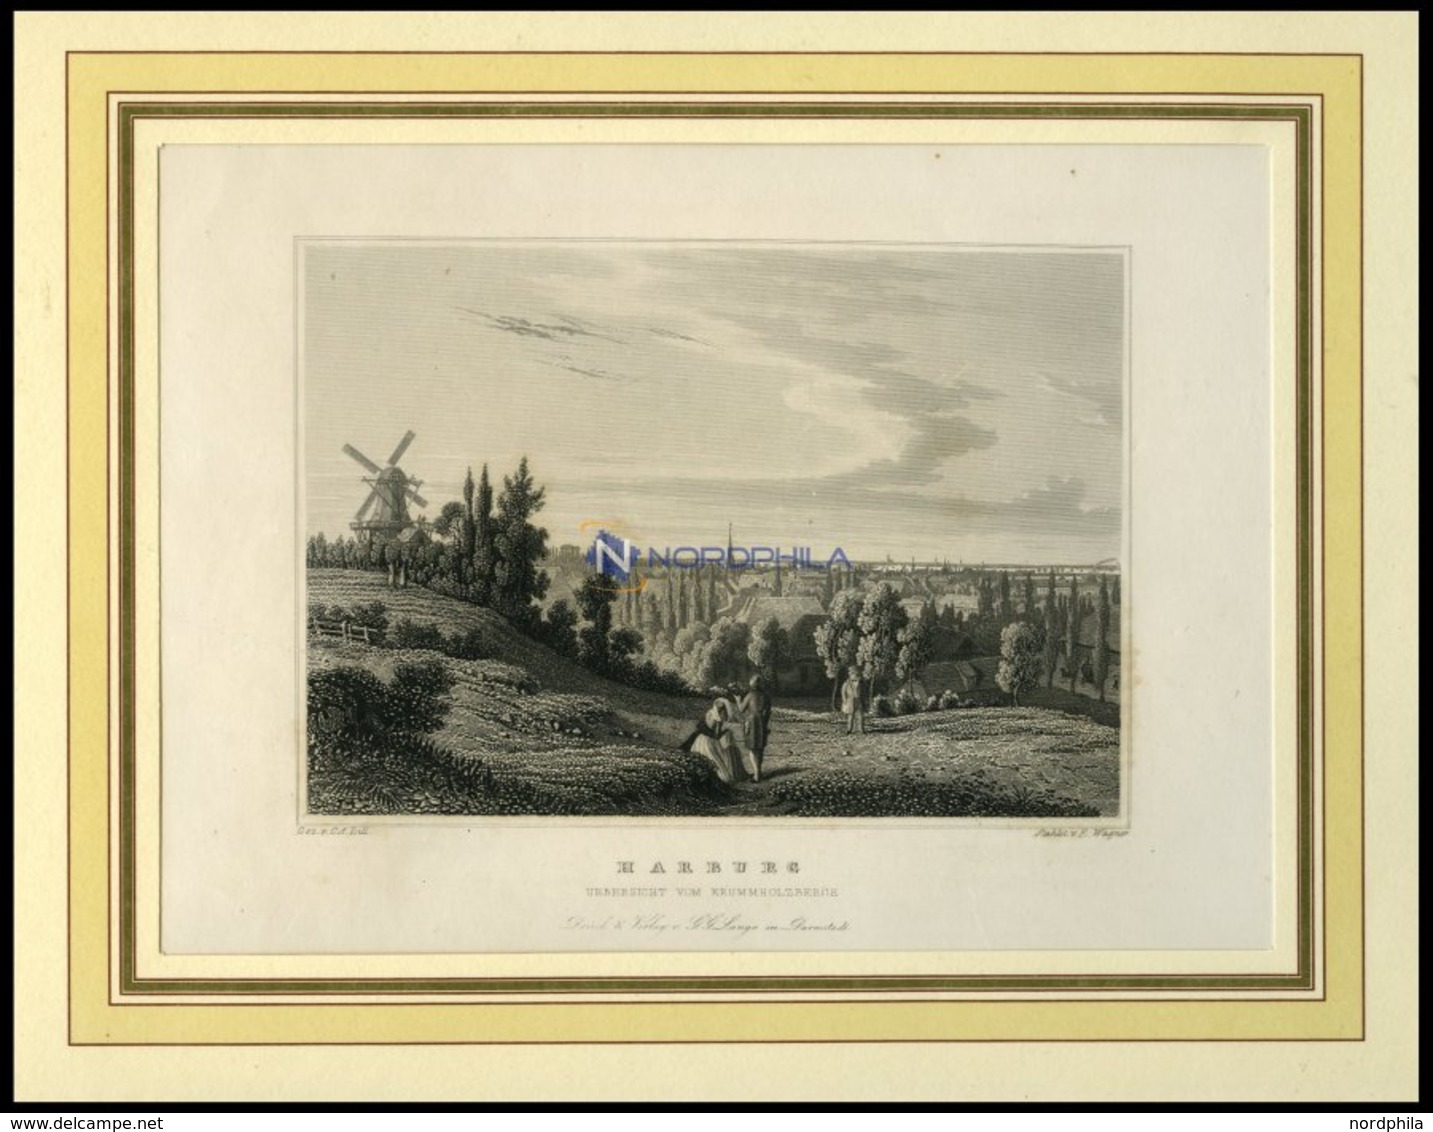 HAMBURG-HARBURG, Gesamtansicht Vom Krummholzberg, Stahlstich Von Lill/Wagner Um 1840 - Lithographies